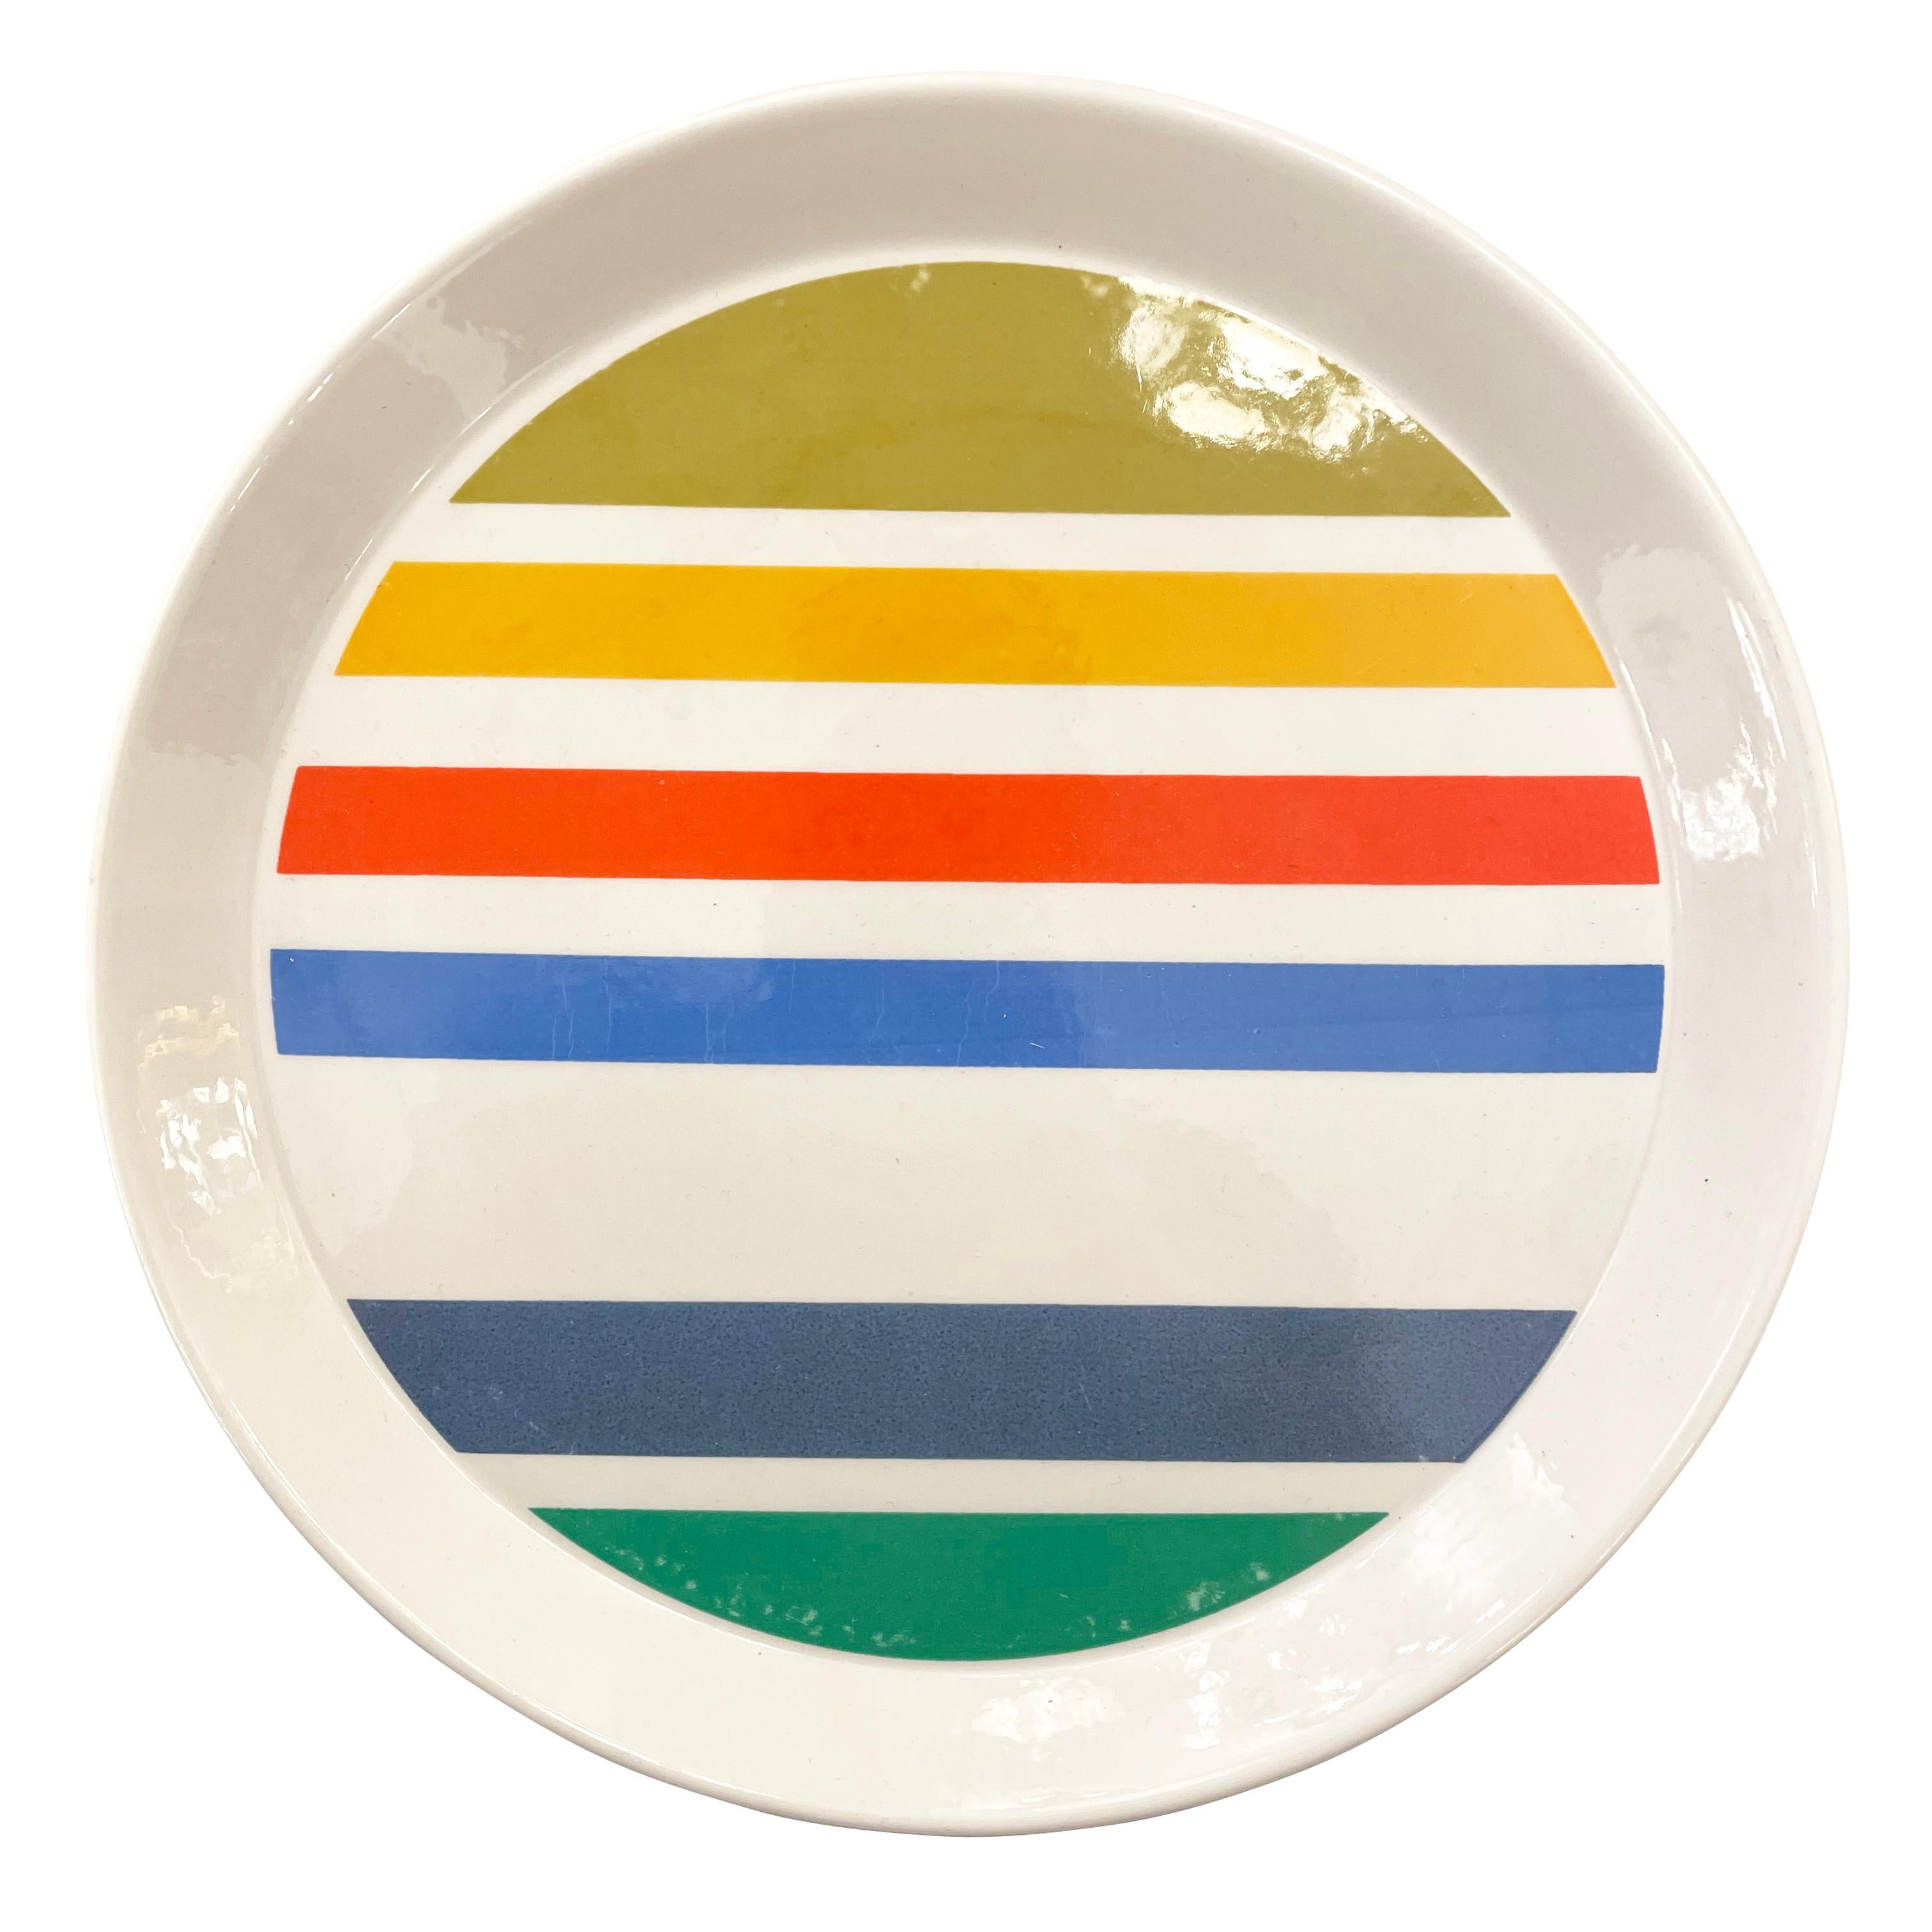 Assiette décorative conçue par Gio Ponti pour Ceramiche Franco Pozzi dans le cadre de sa série 